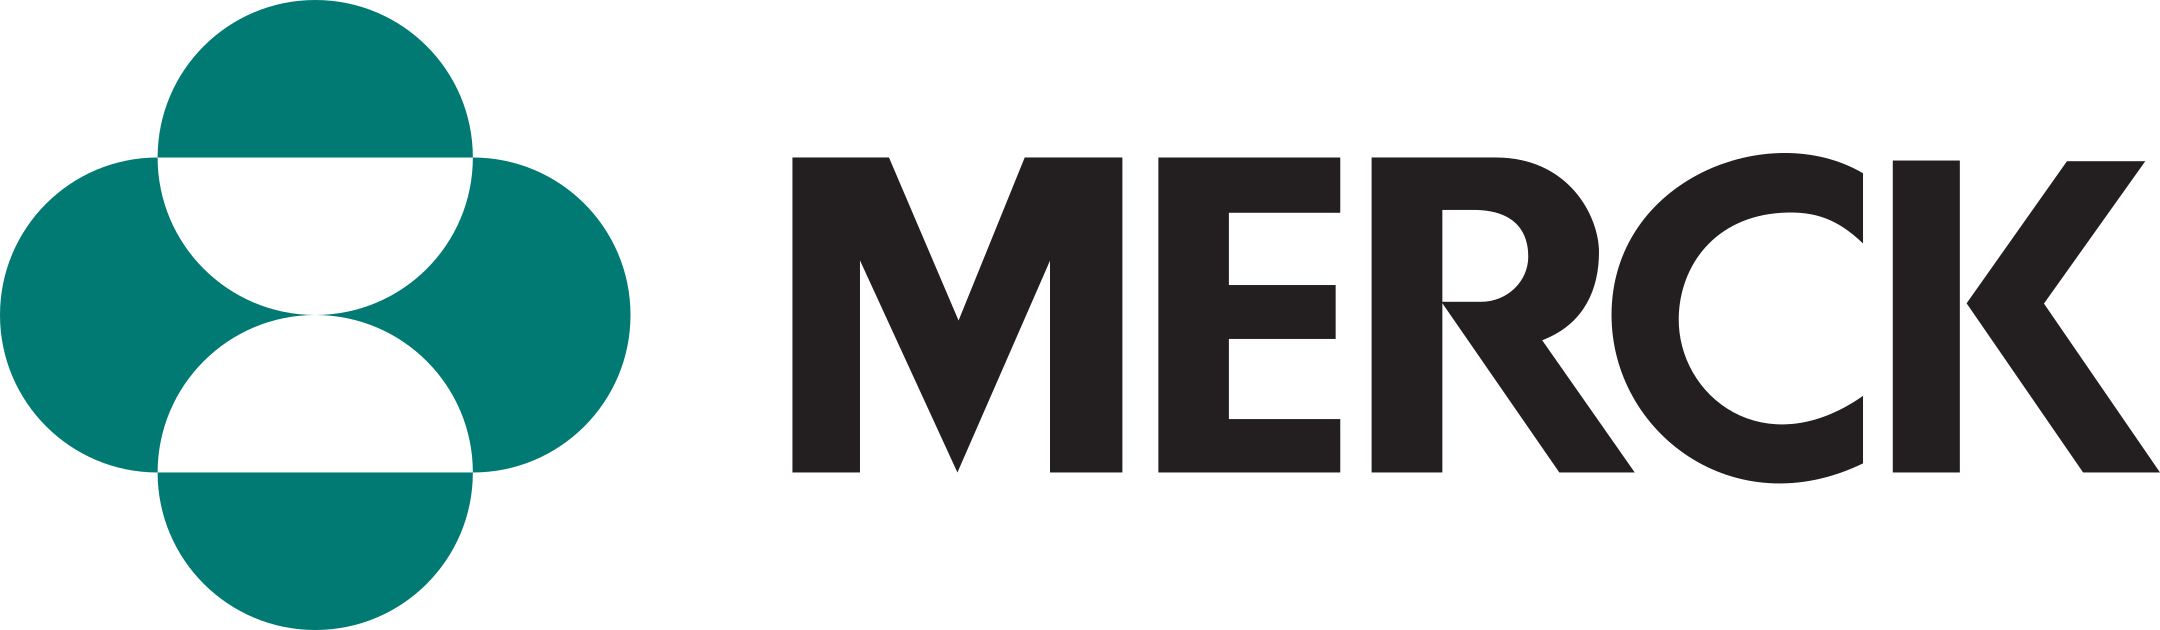 merck logo 1 - Merck Logo